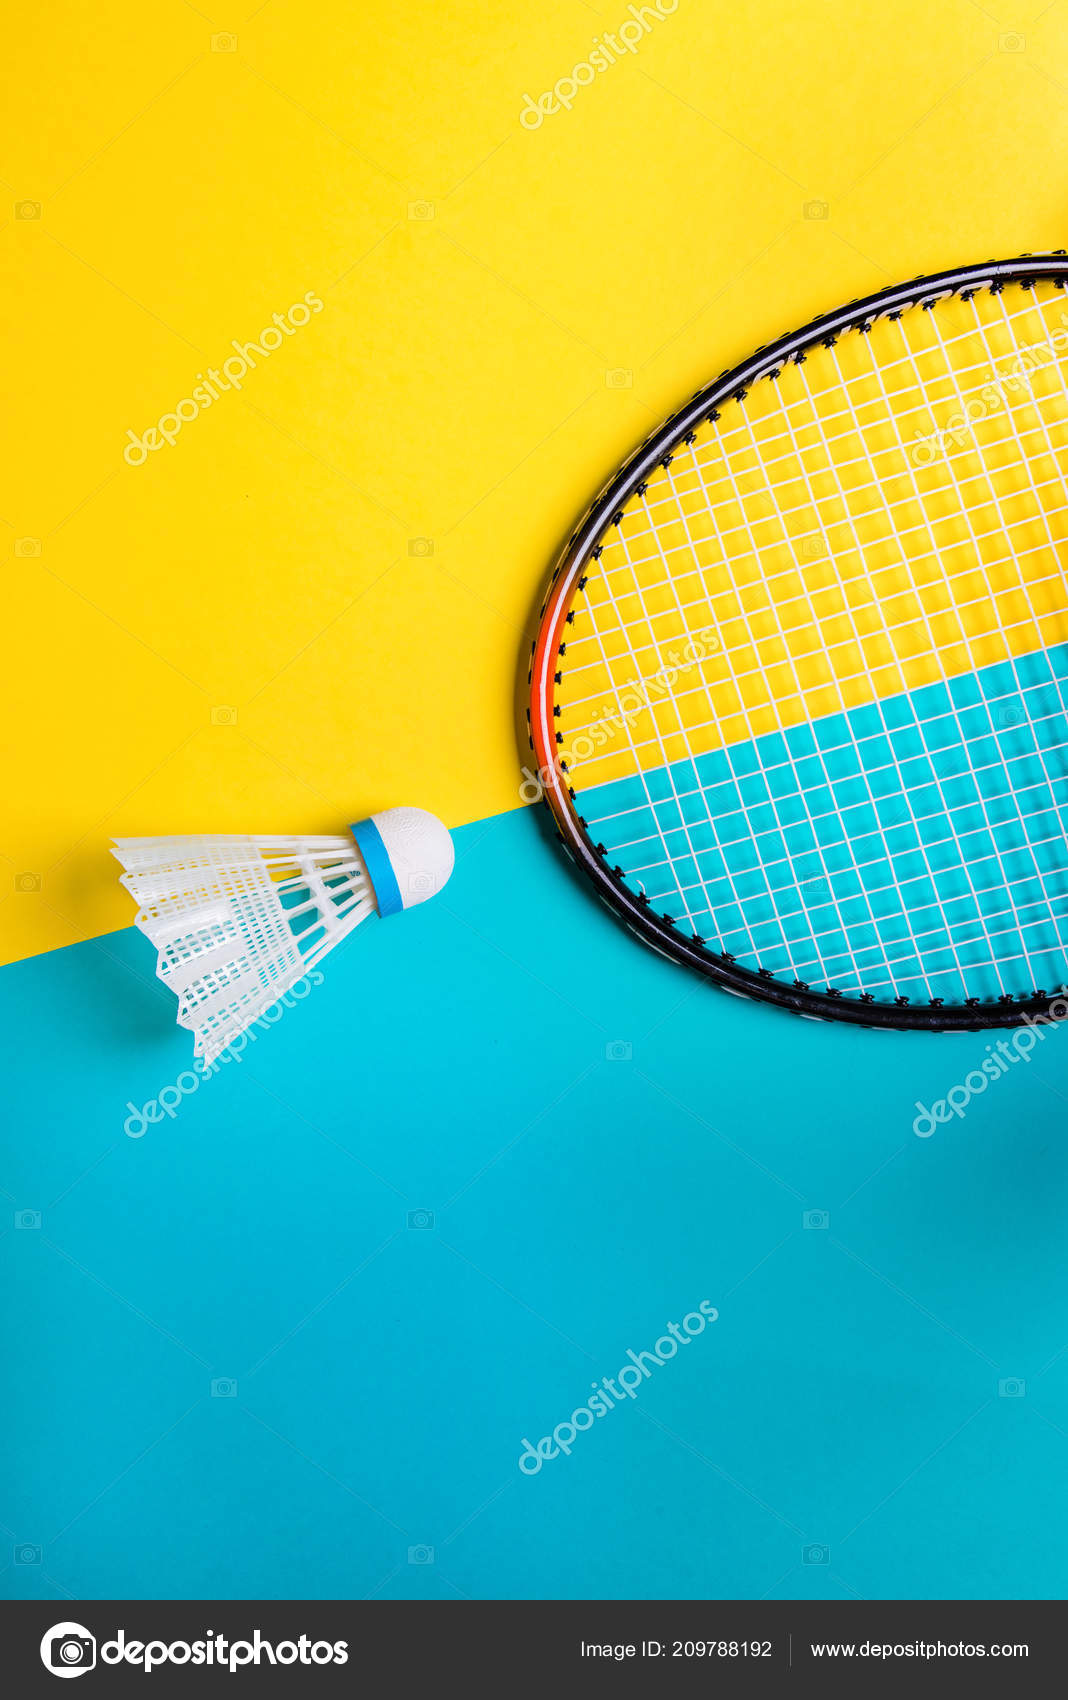 Volants badminton sport